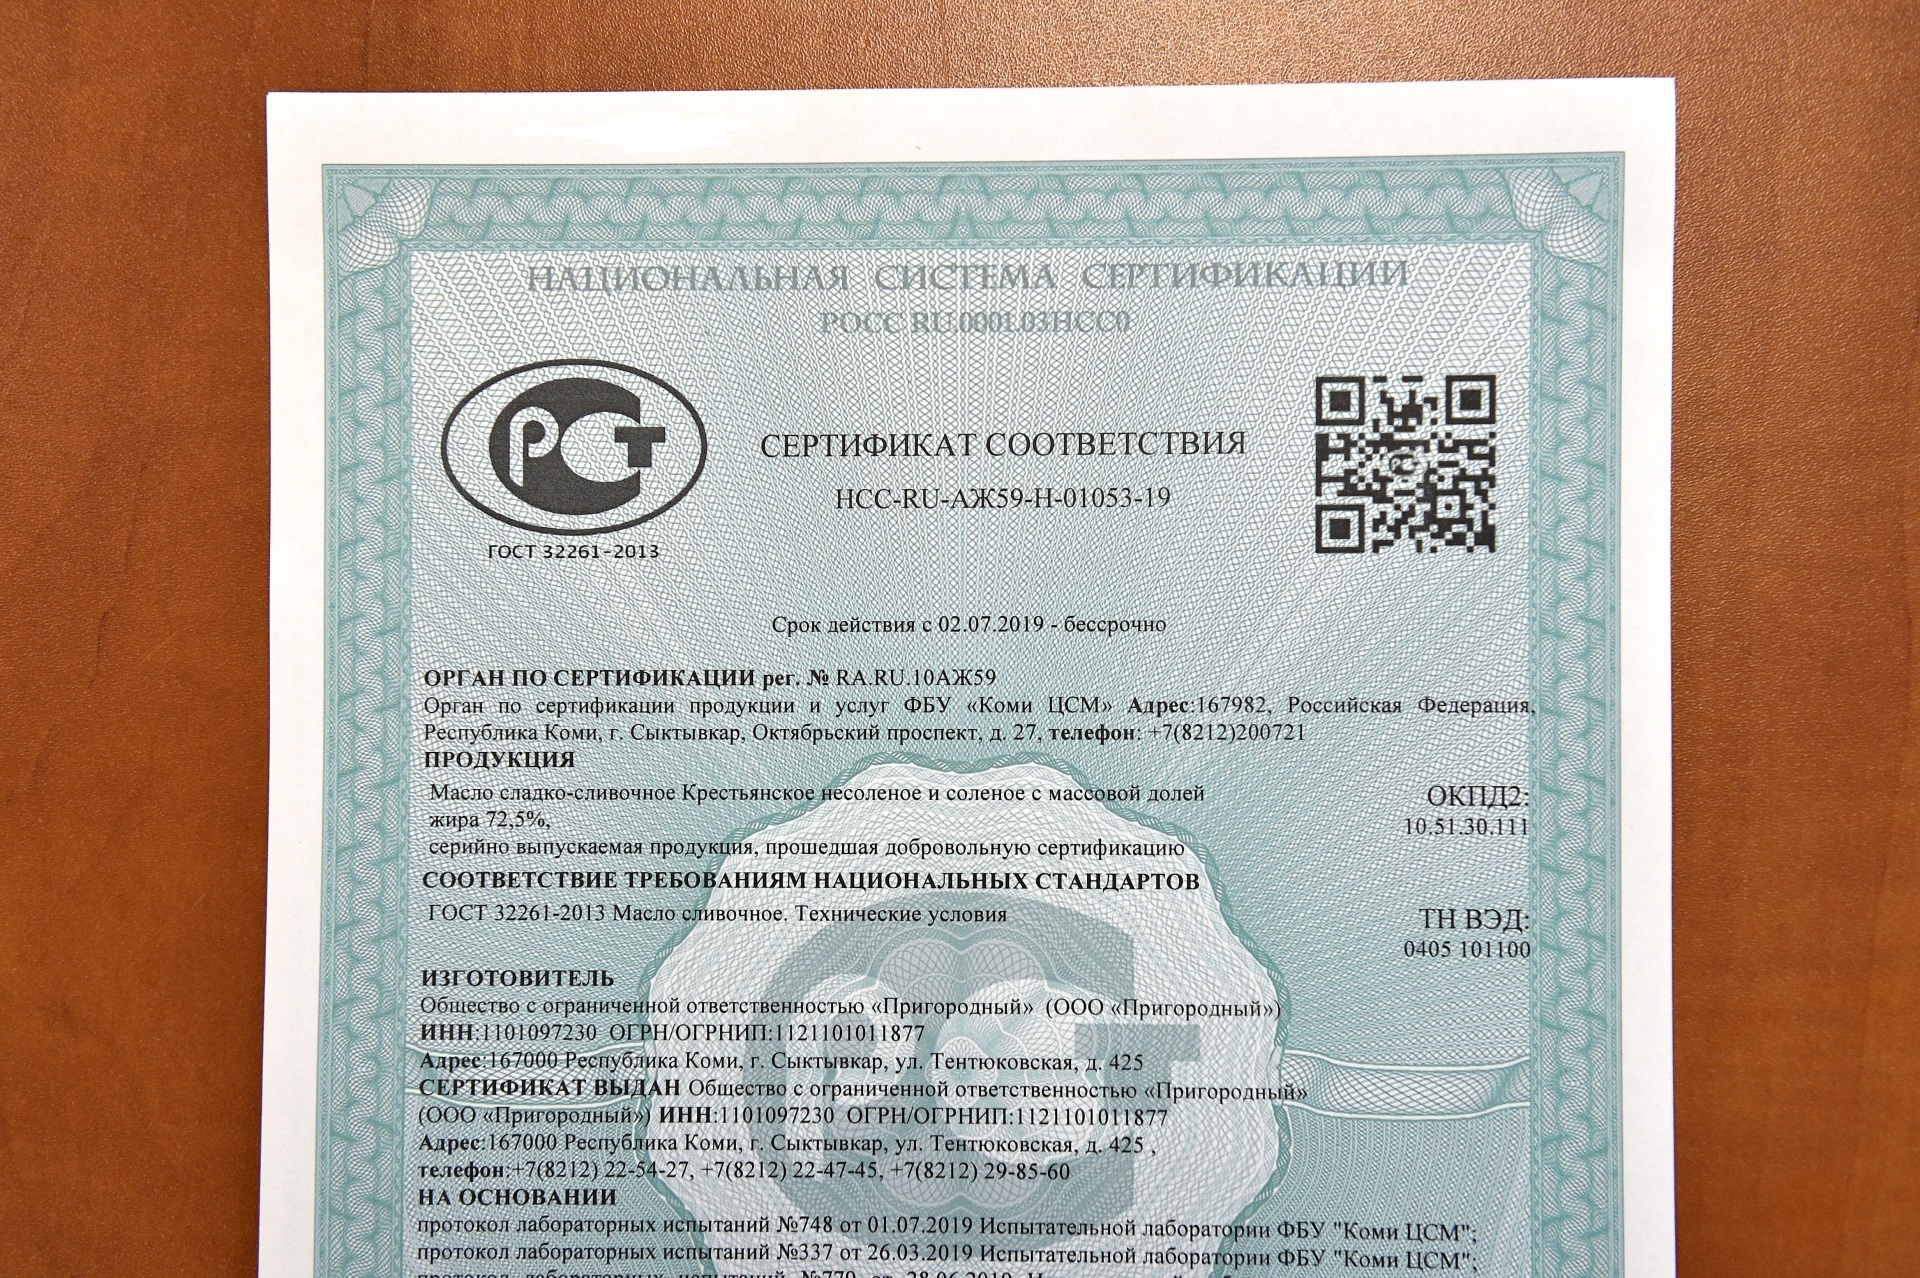 Сертификация товаров рф